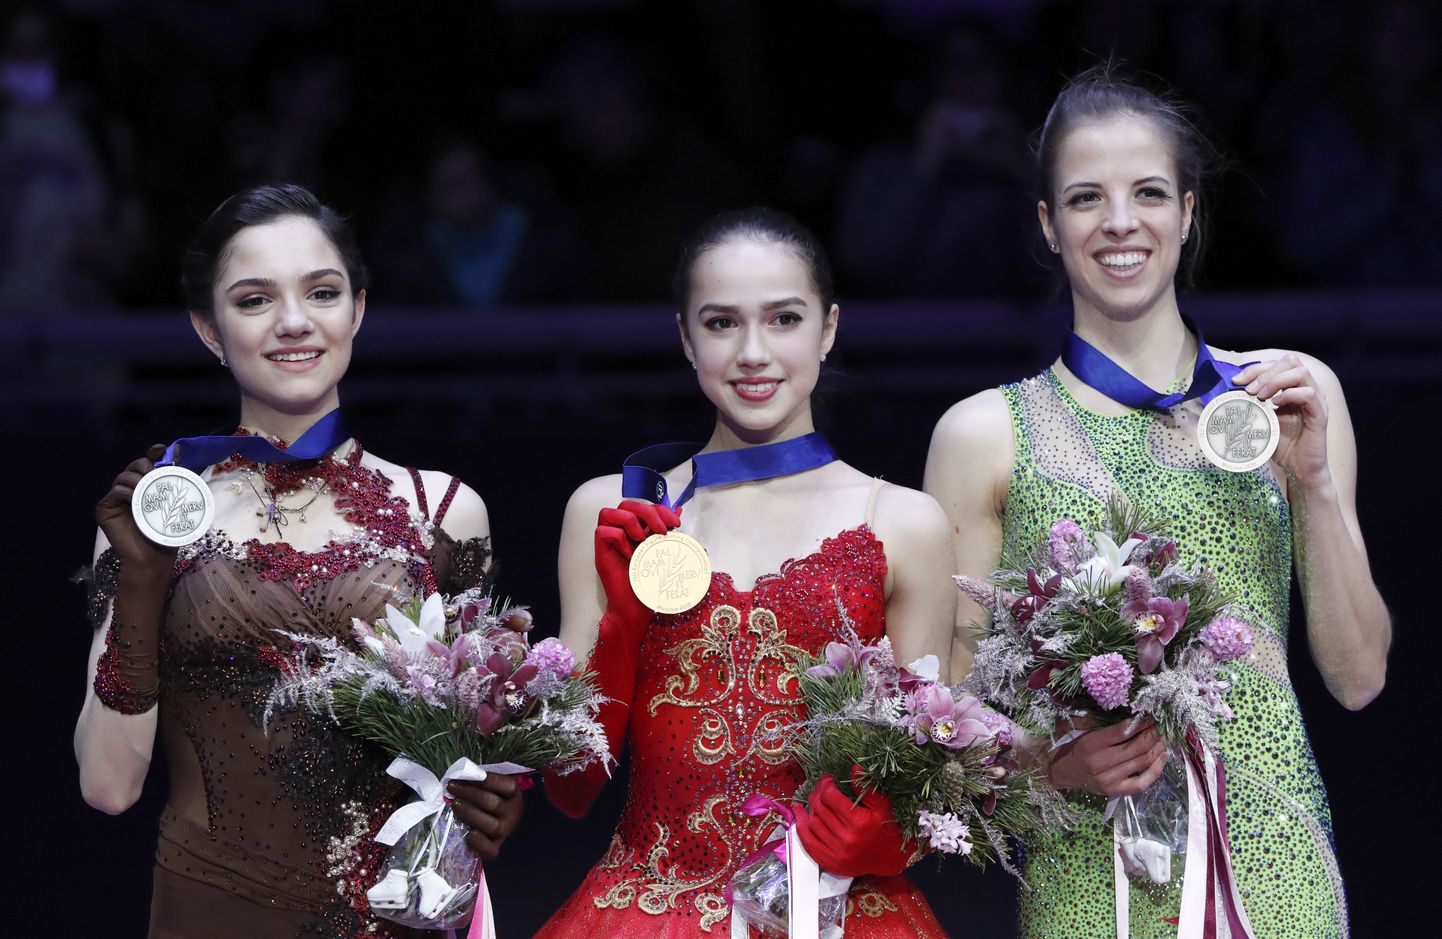 Призеры чемпионата Европы в женском одиночном катании. Слева направо: Евгения Медведева, Алина Загитова, Каролина Костнер